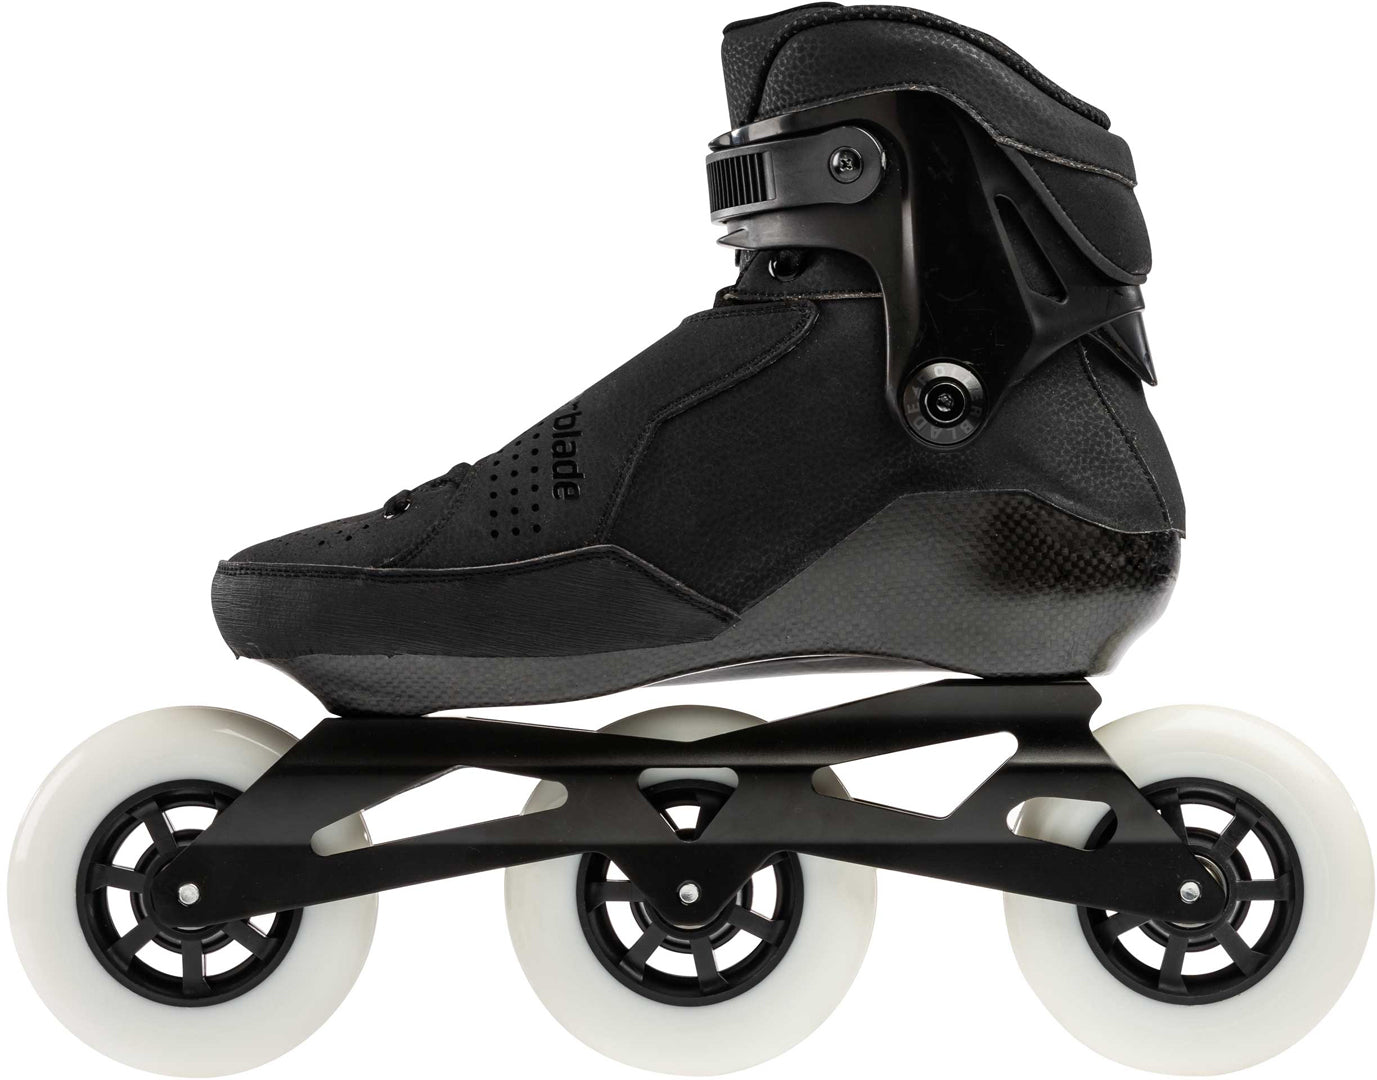 Rollerblade 110 Inline Speed Skates - 110 BLK - Sale |